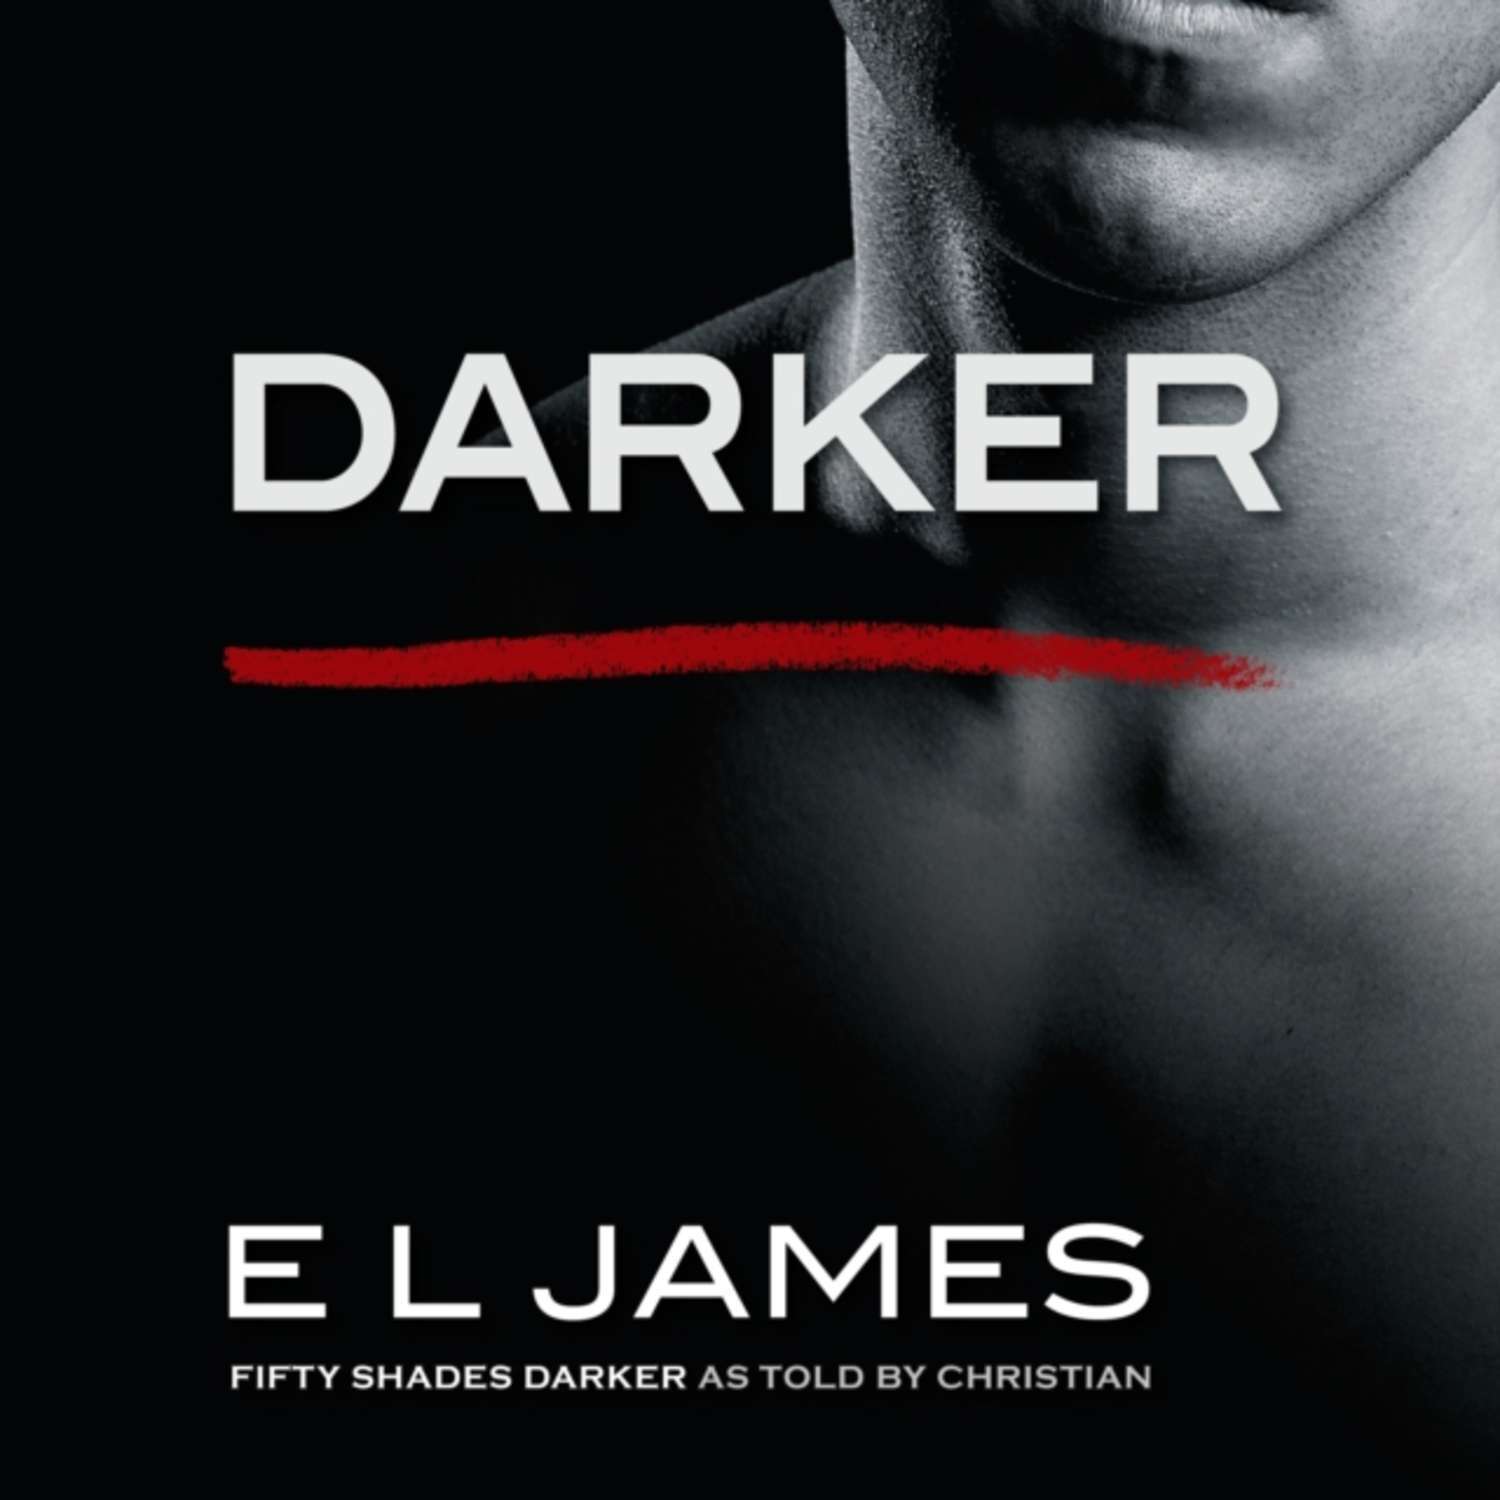 Цифровая аудиокнига "Darker" James E L – купить книгу с быс...